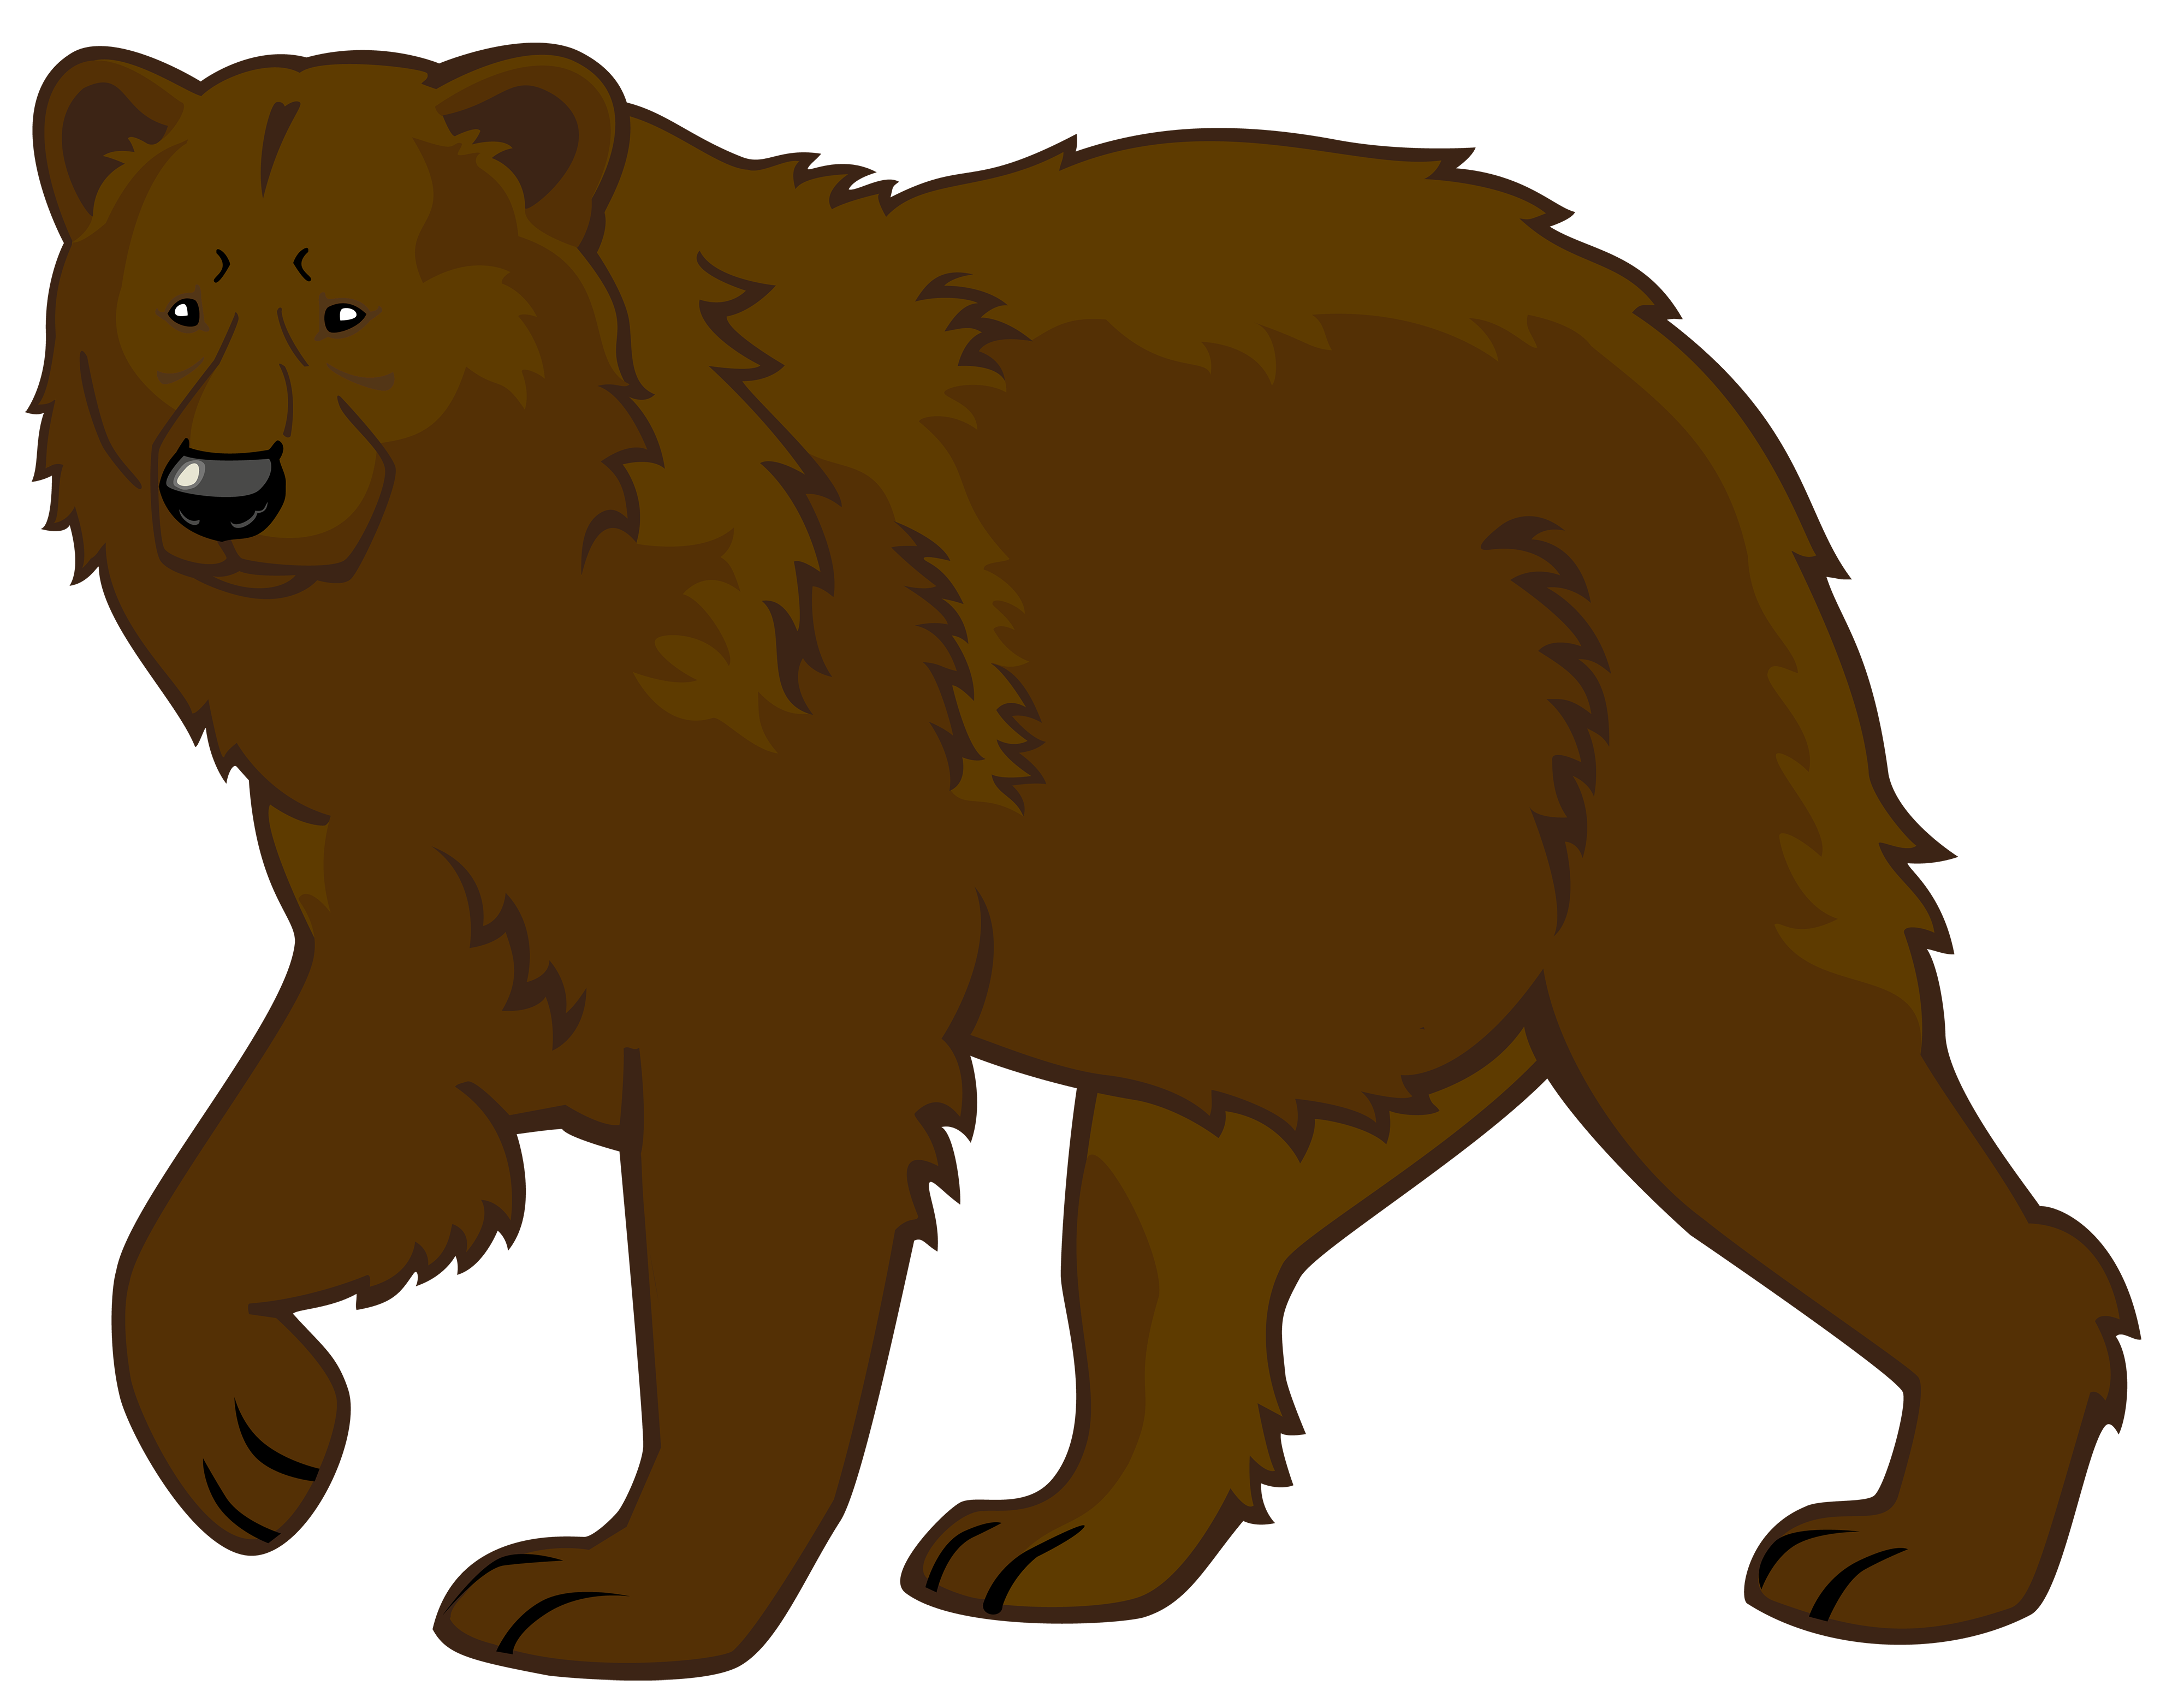 Bear clip art at vector clip 